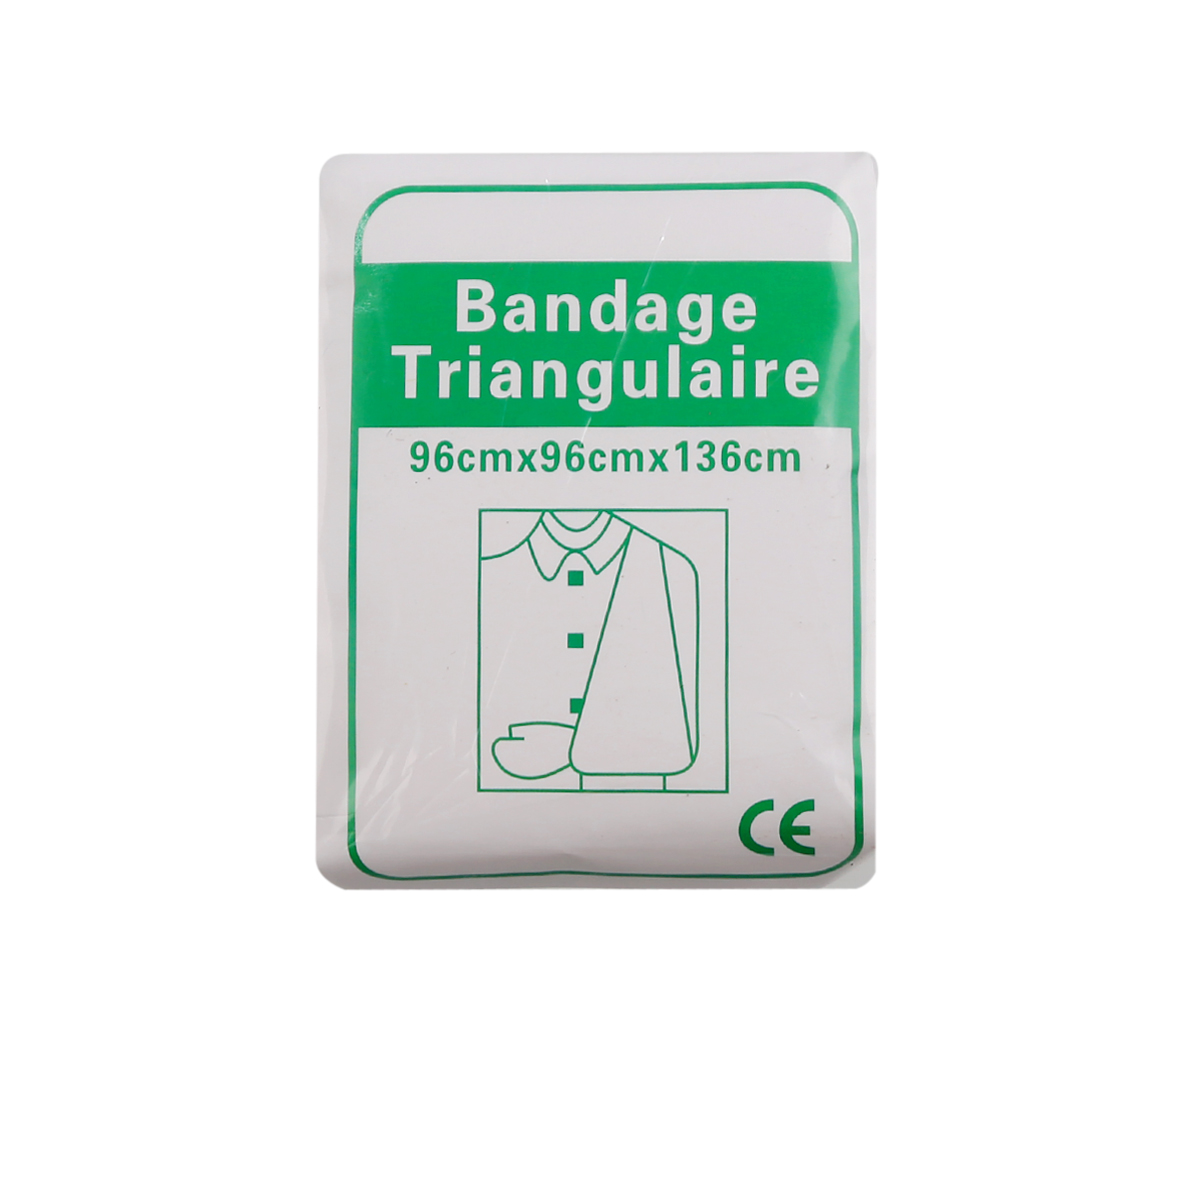 Triangle bandage, regular bandage